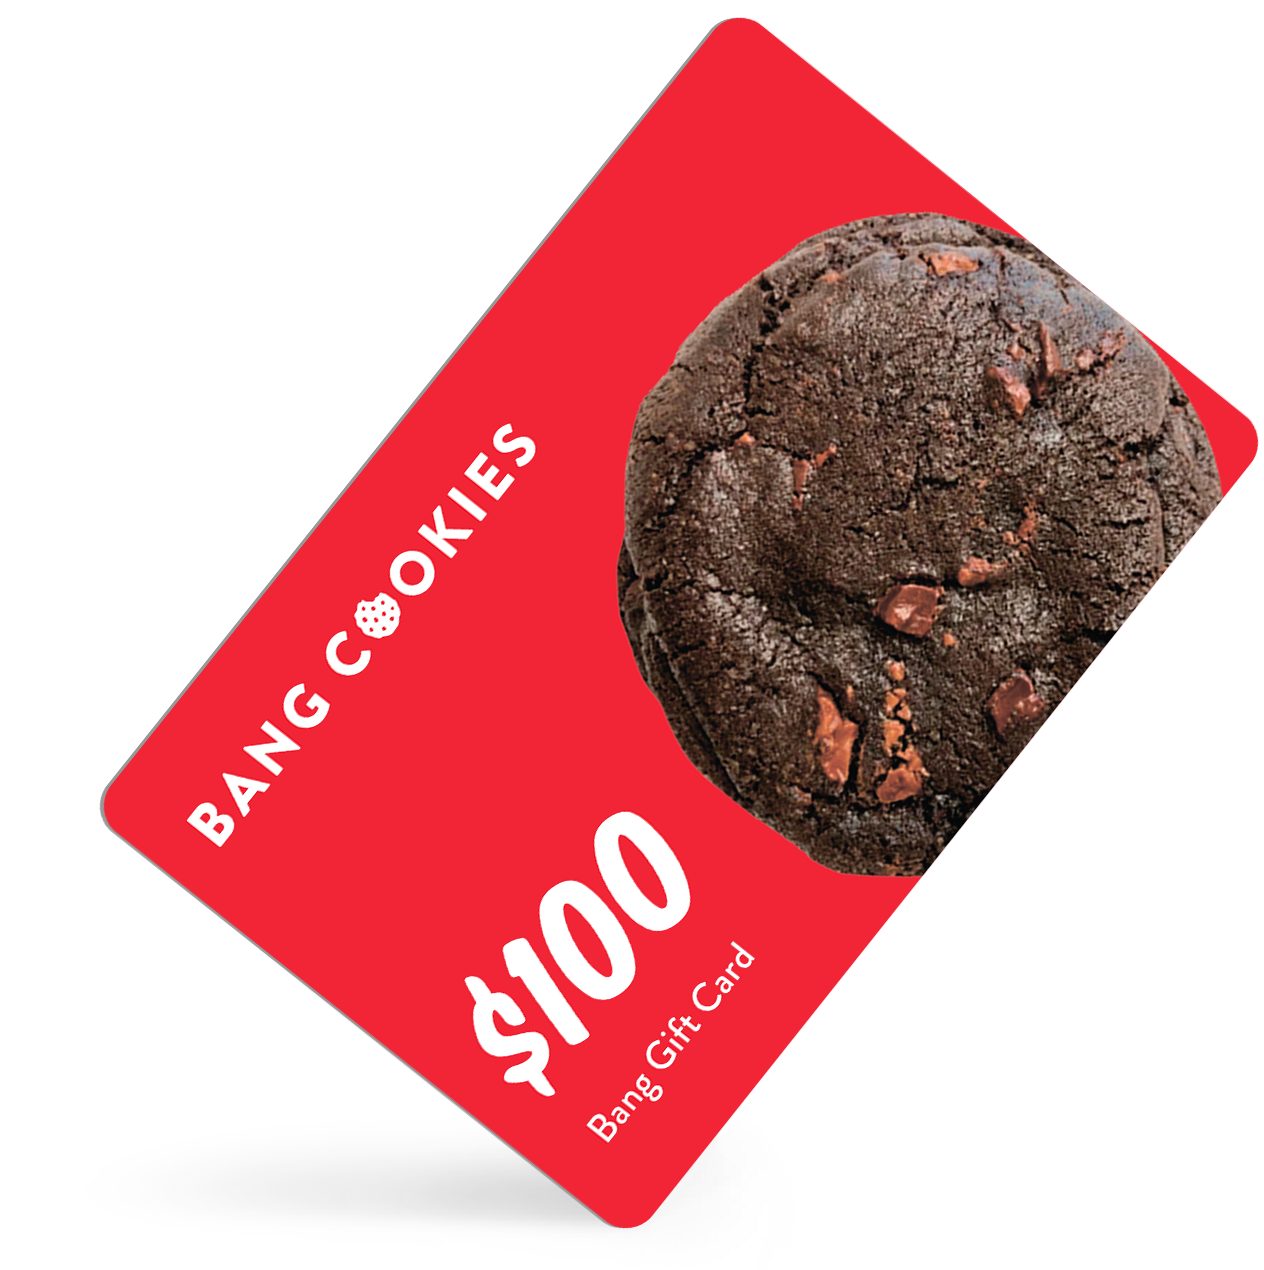 $100 Bang Cookies Gift Card